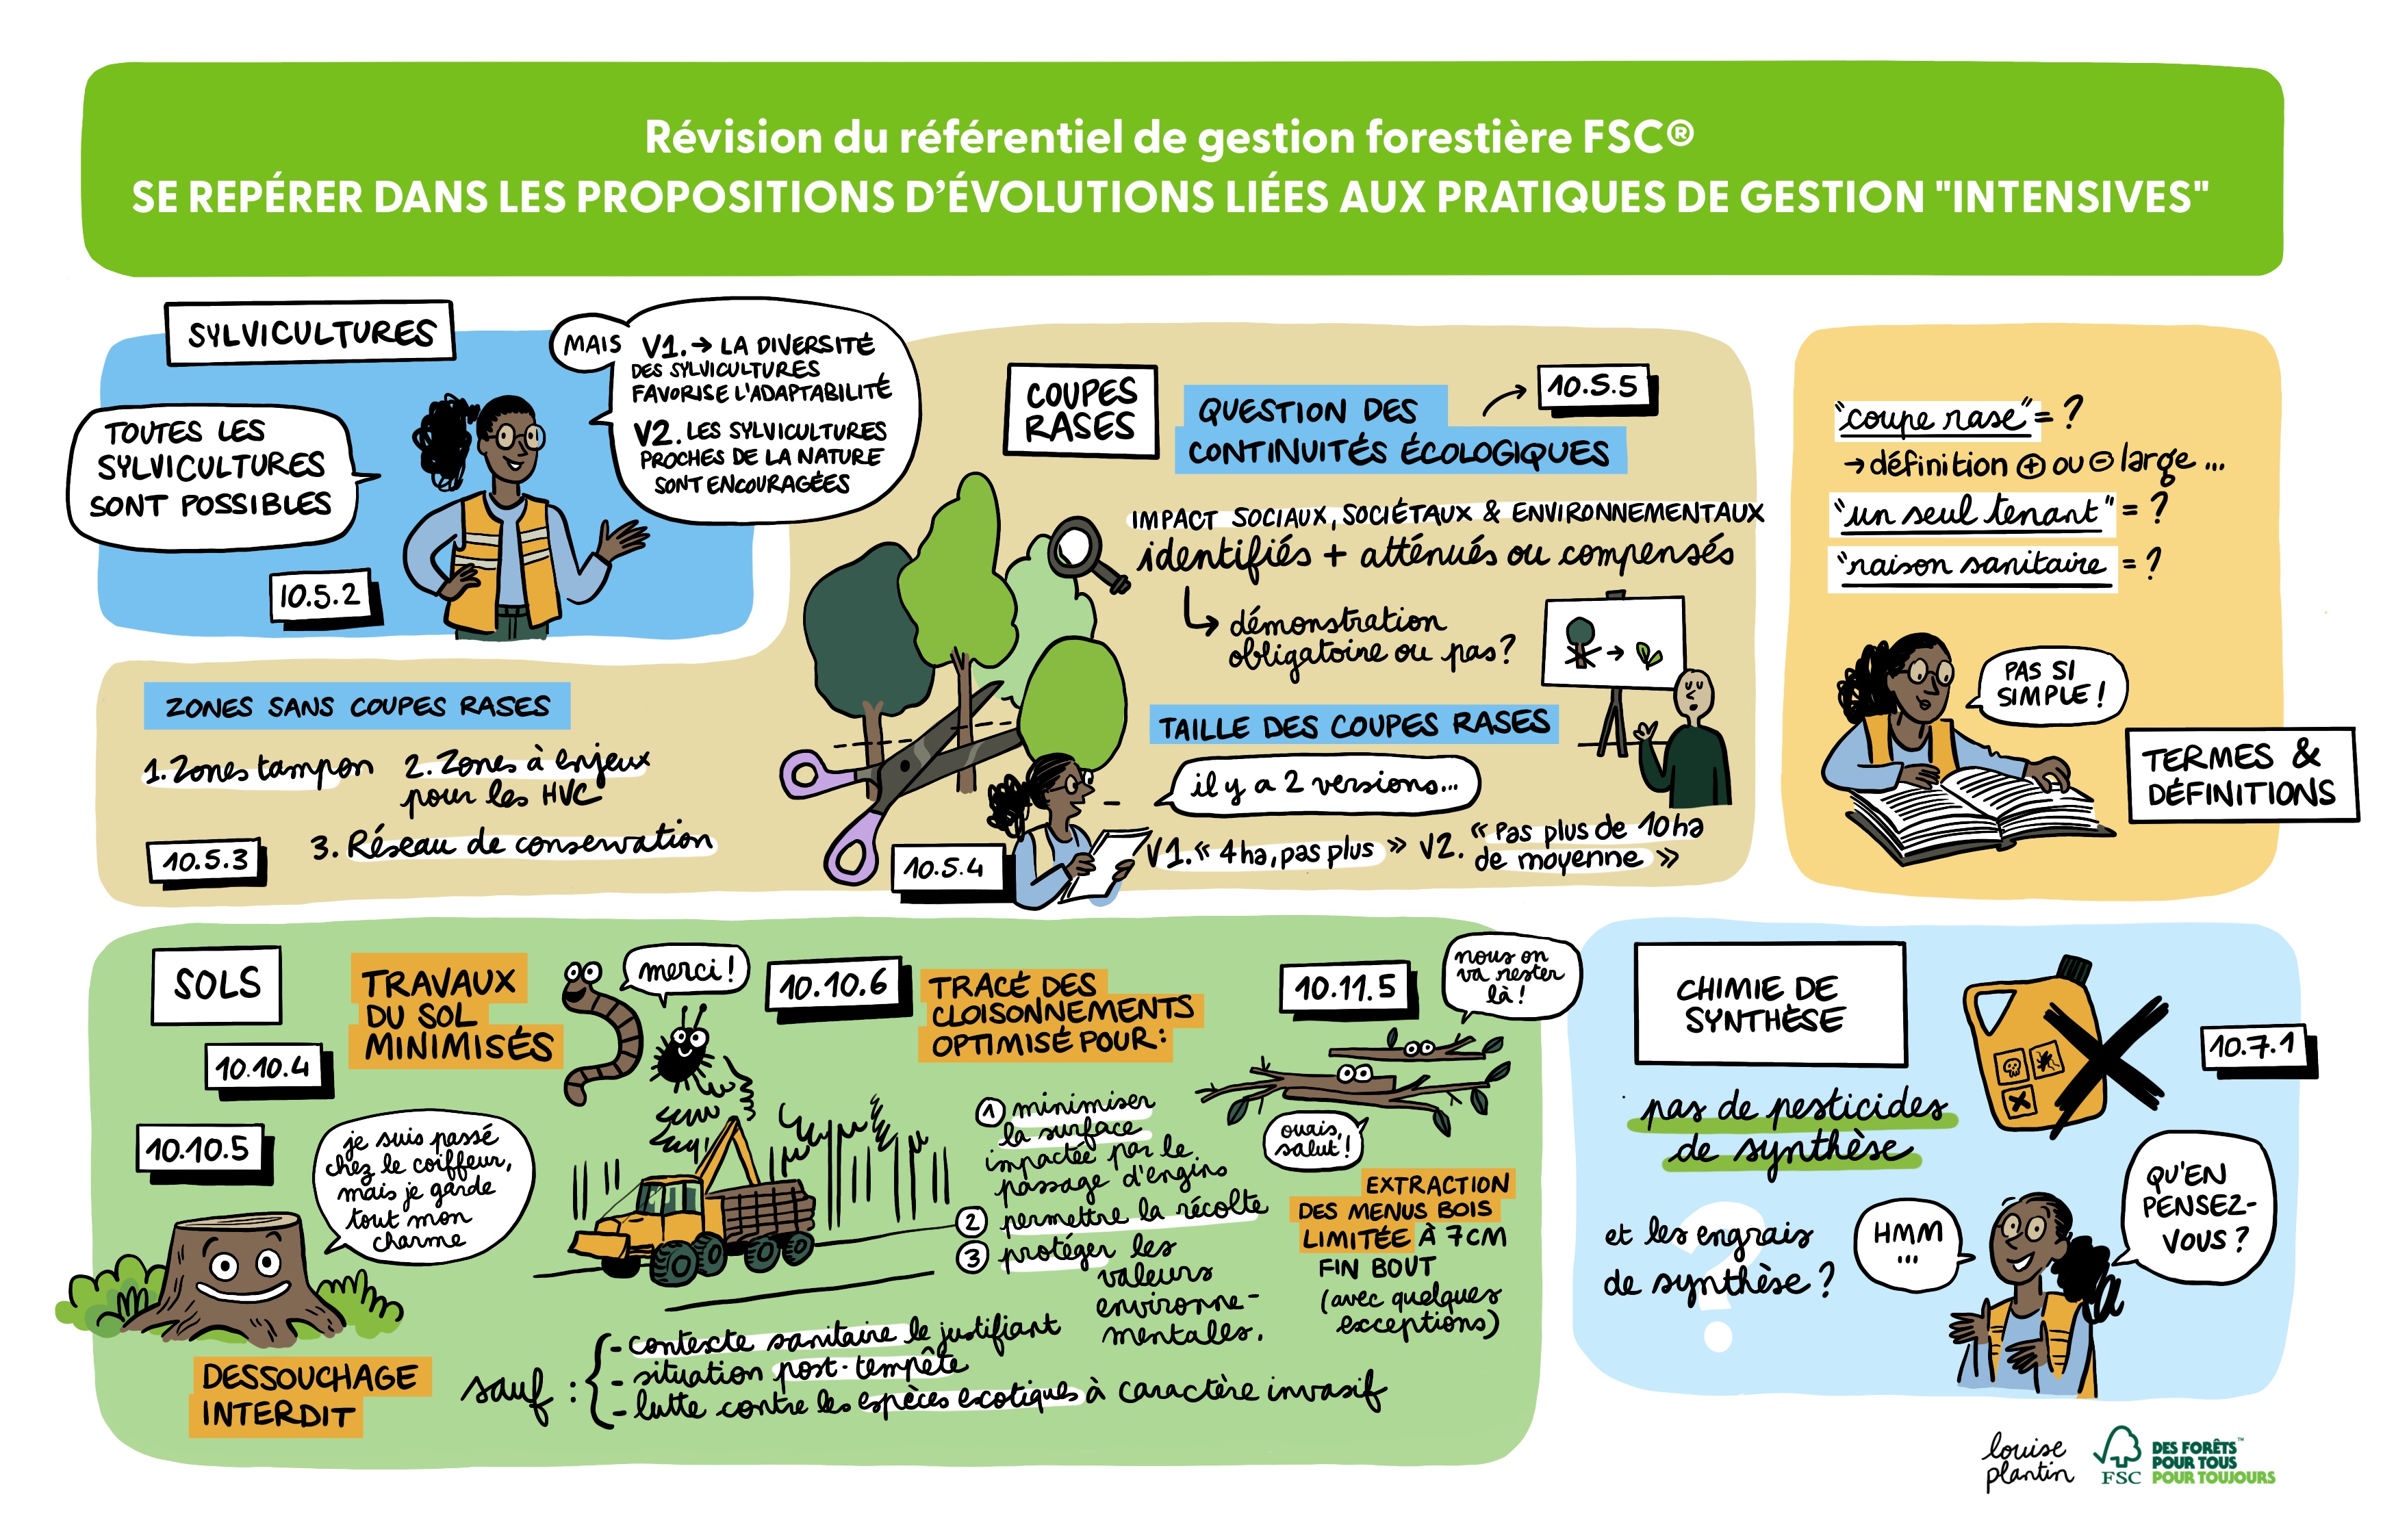 Illustration FSC France